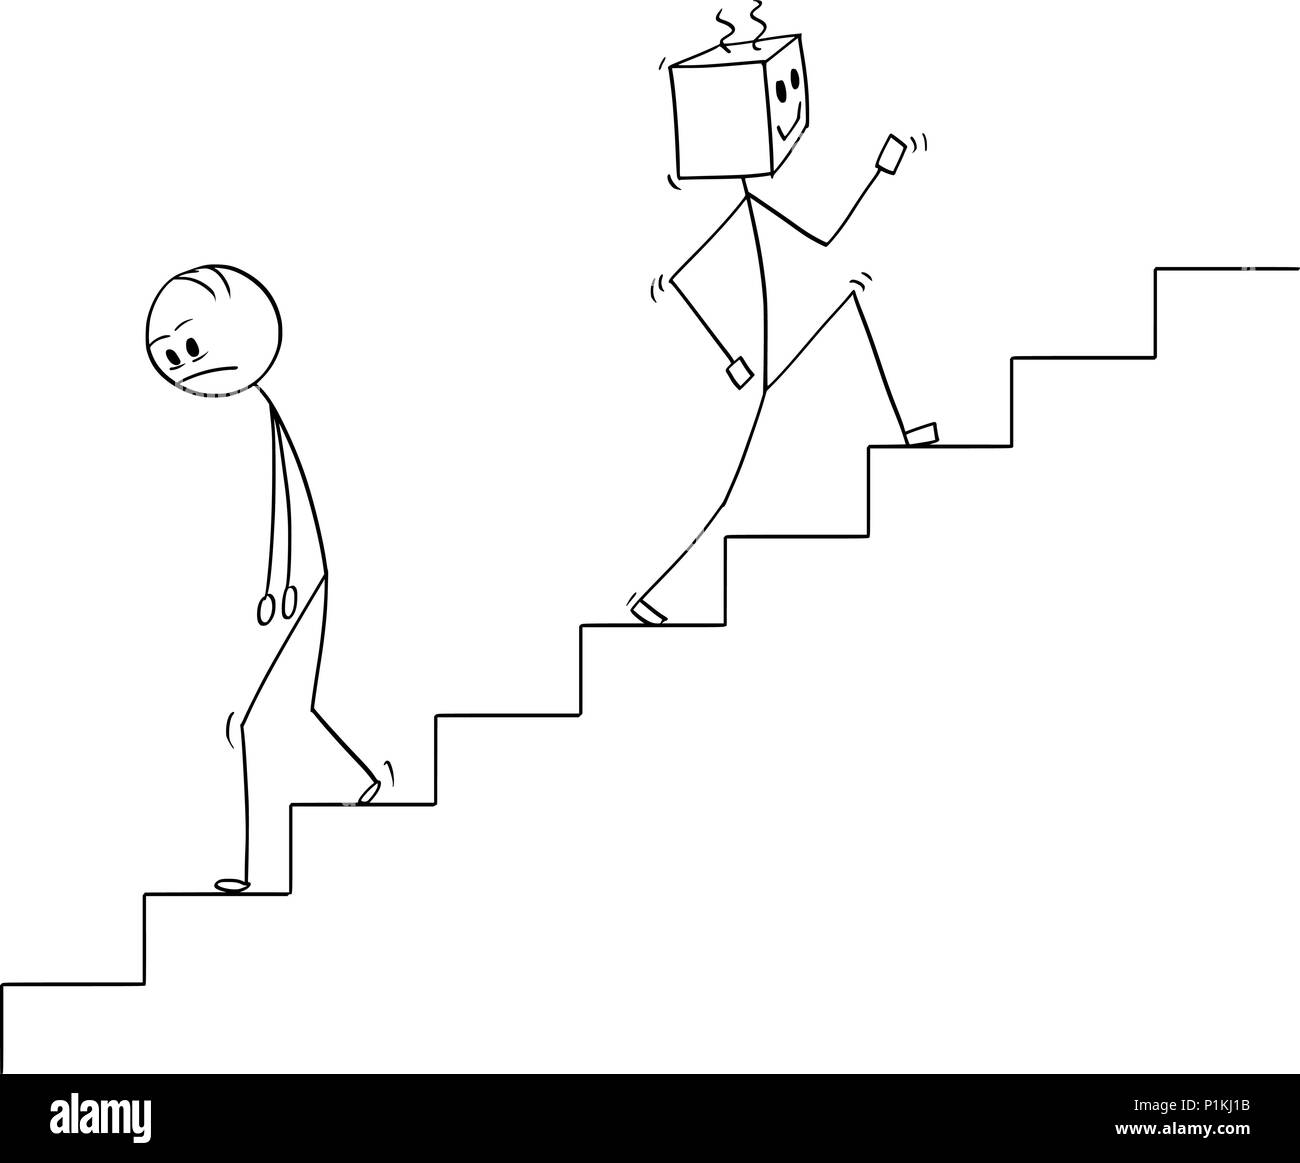 Caricature des droits de descendre les escaliers et le robot se déplacer vers le haut Illustration de Vecteur